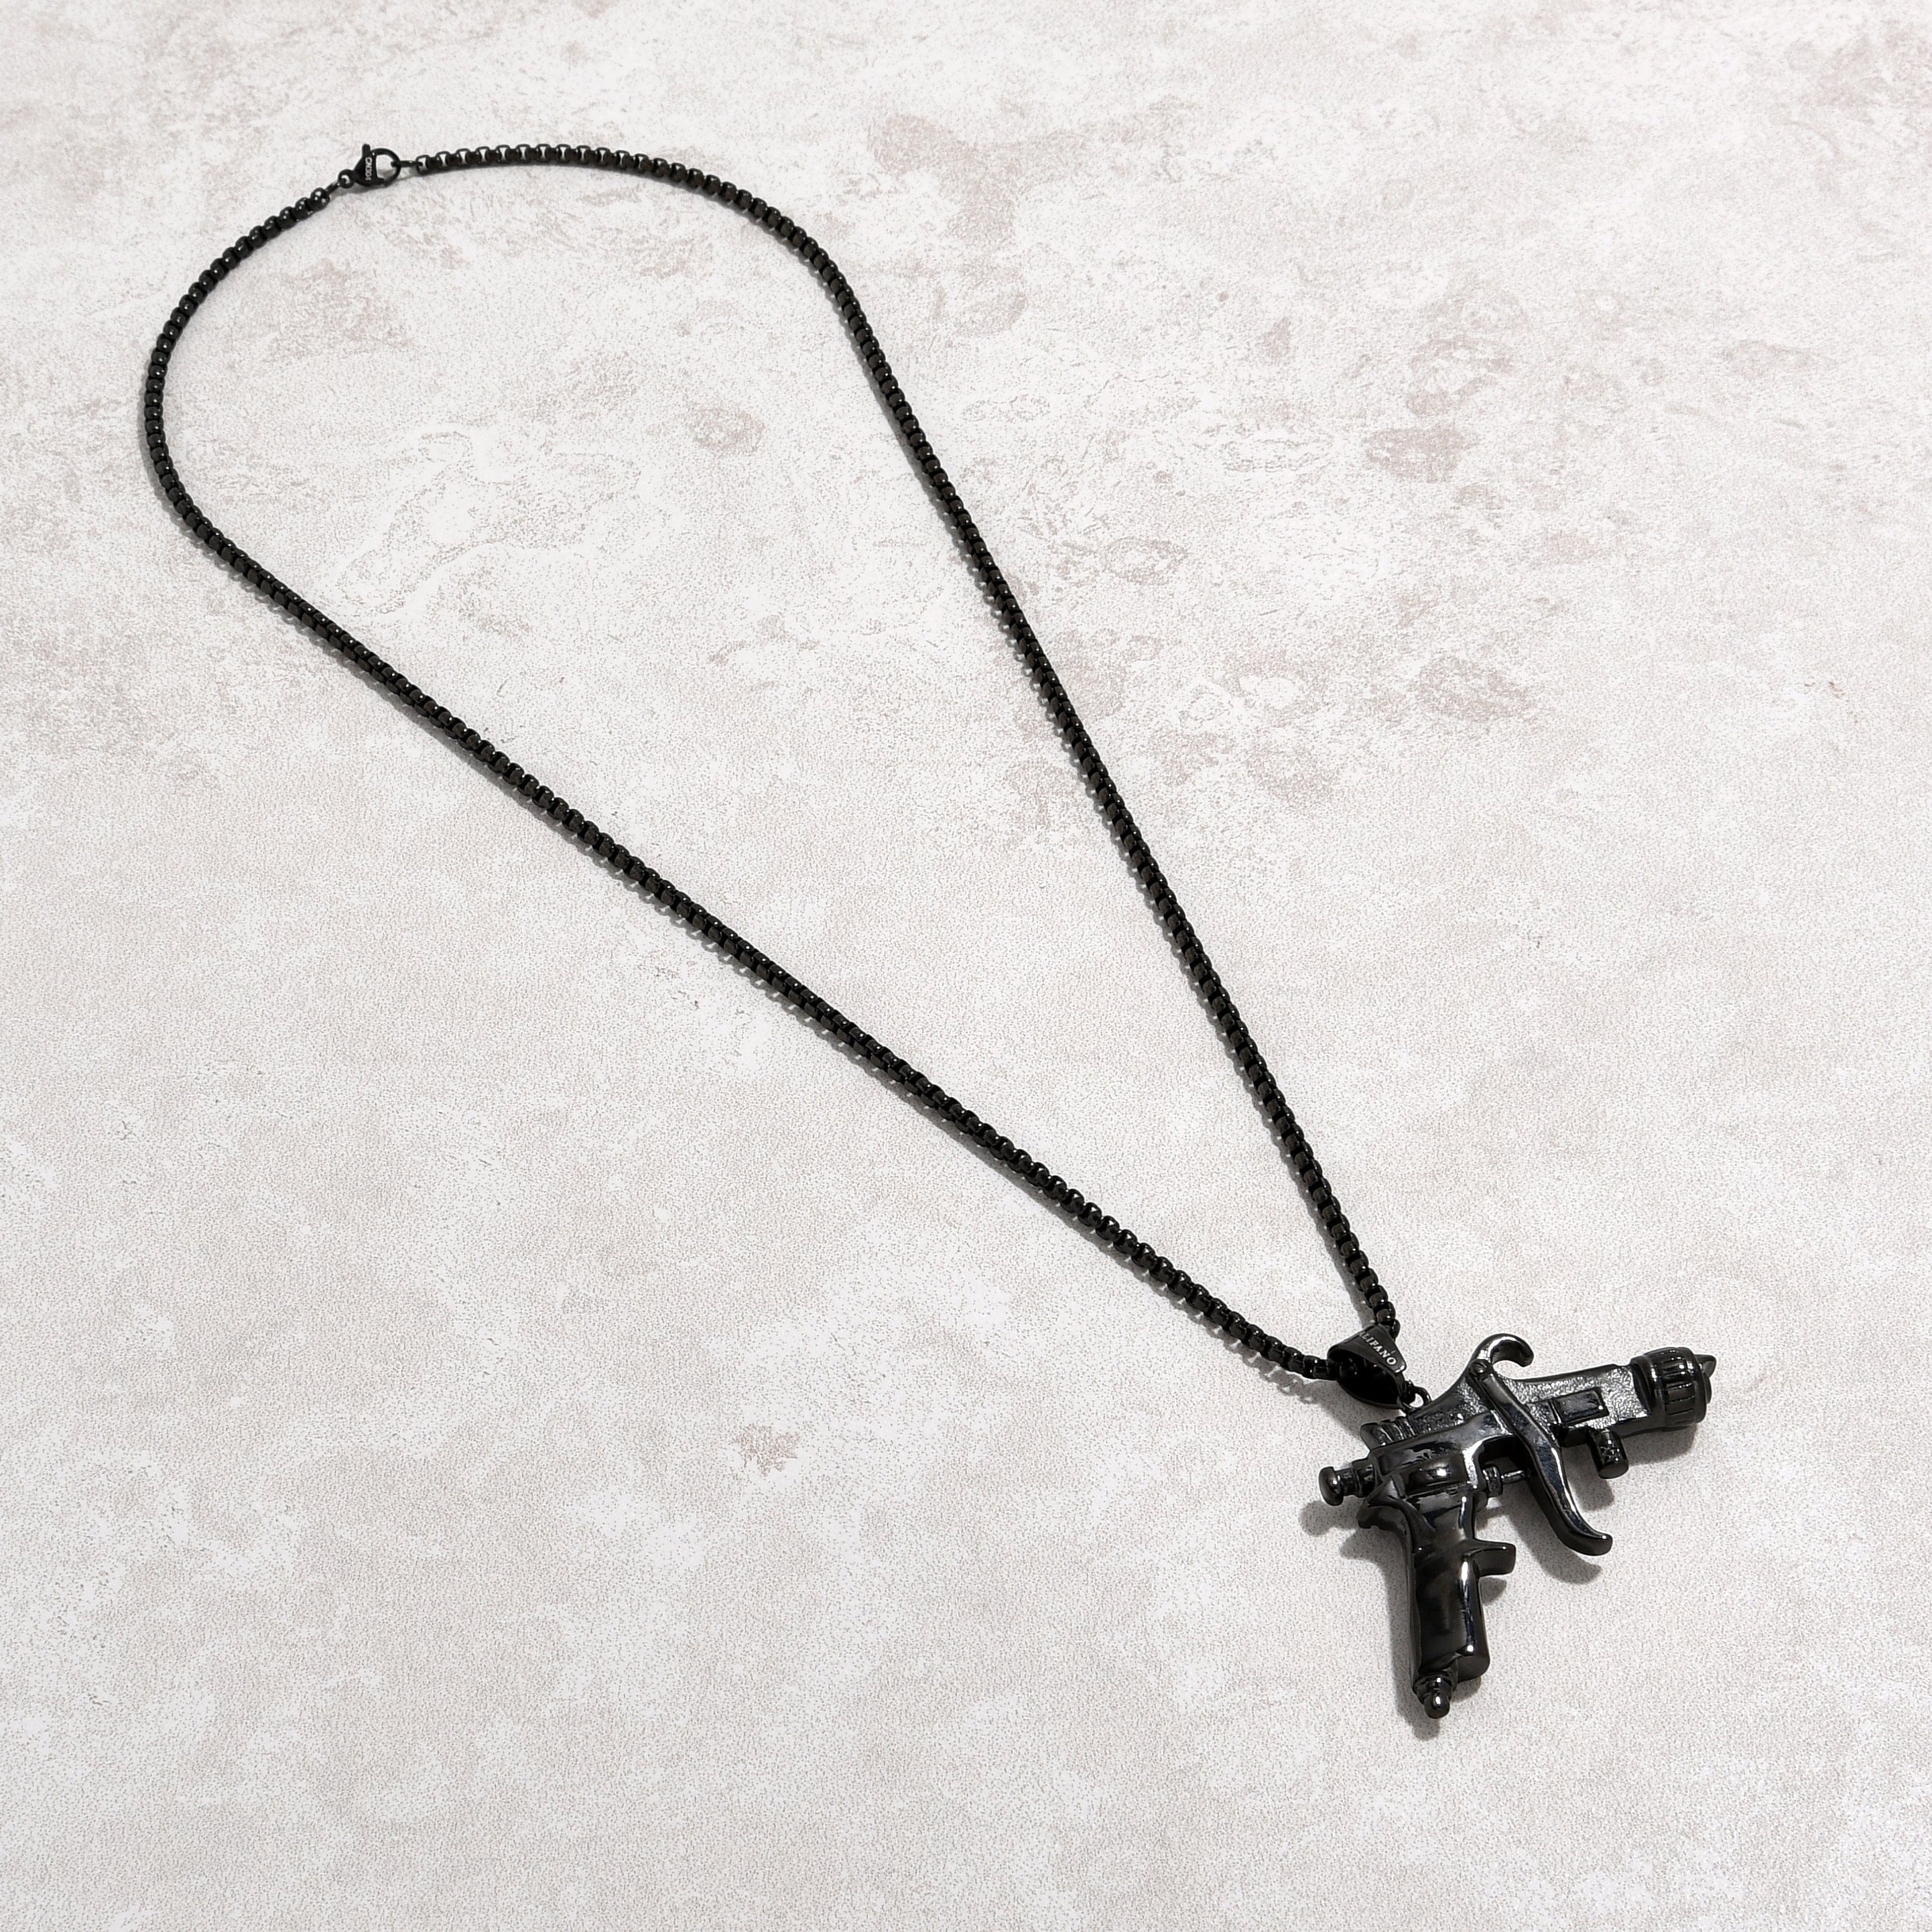 Kalifano Steel Hearts Jewelry Black Tattoo Gun Steel Hearts Necklace SHN525-B